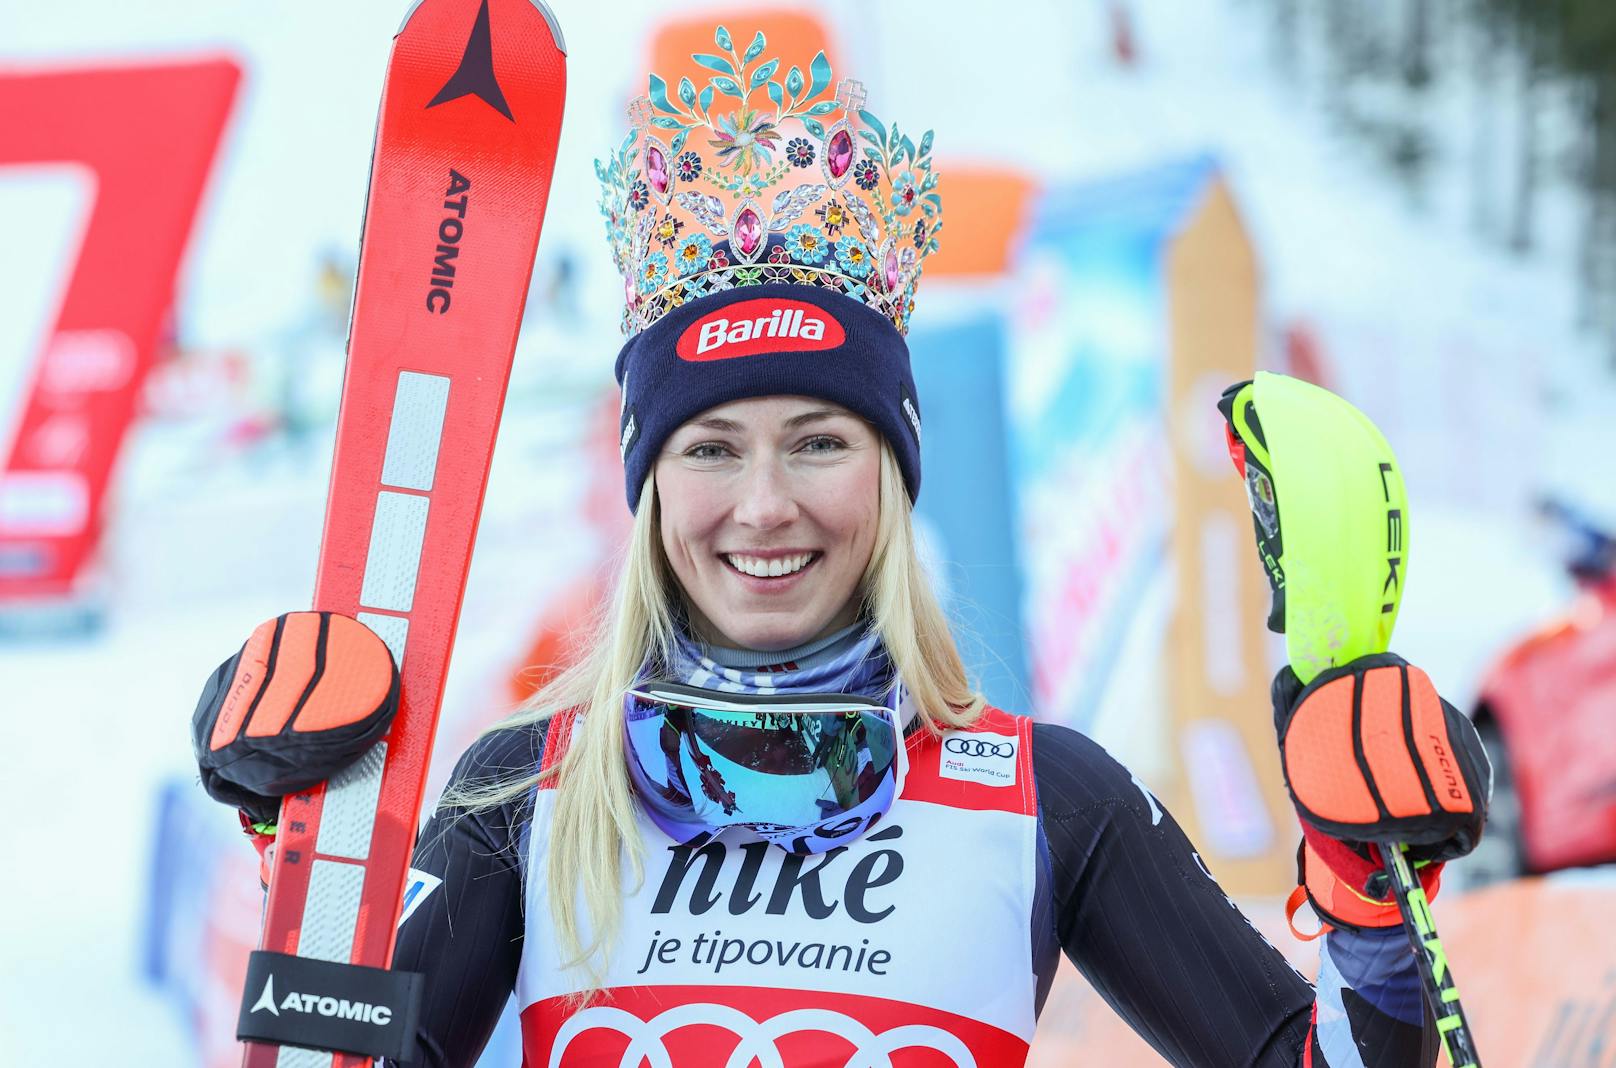 Nummer 95. Mikaela Shiffrin krönte sich in Jasna zur Slalomsiegerin. Zrinka Ljutic und Anna Swenn-Larsson komplettierten das Podest. Es war das nächste Technik-Rennen ohne ÖSV-Athletin in den Top-10.